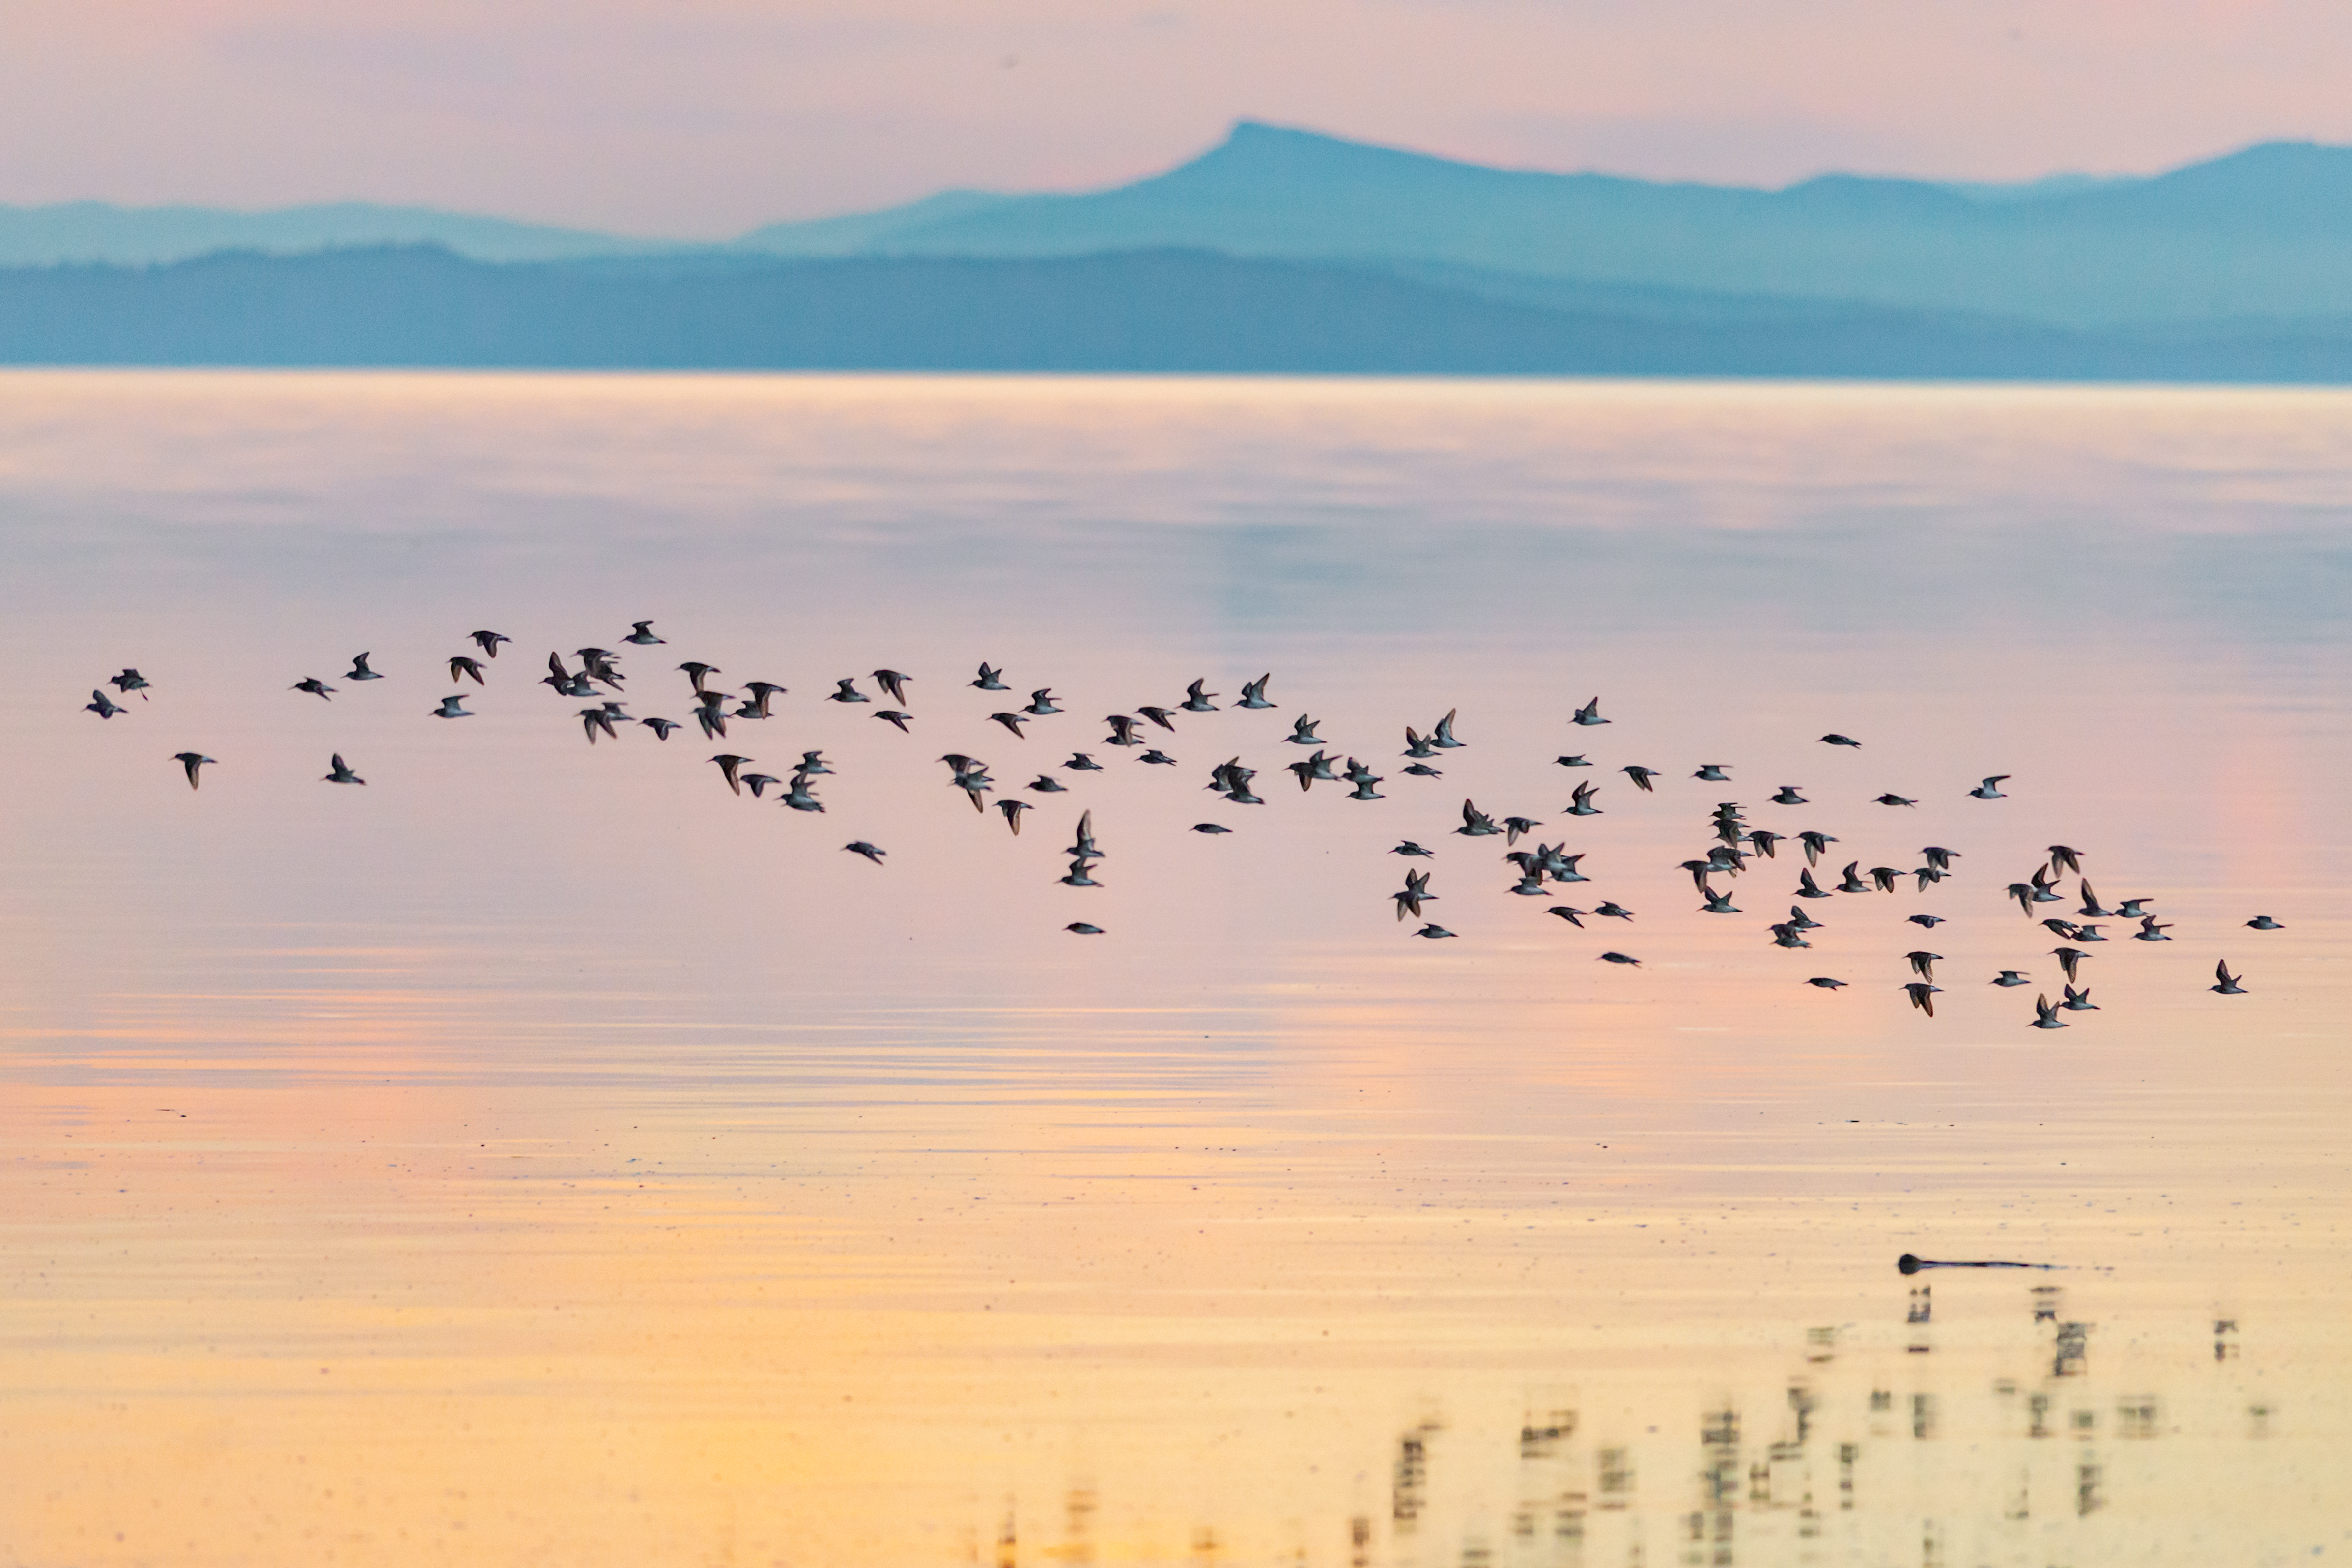 Flock of birds in flight over water